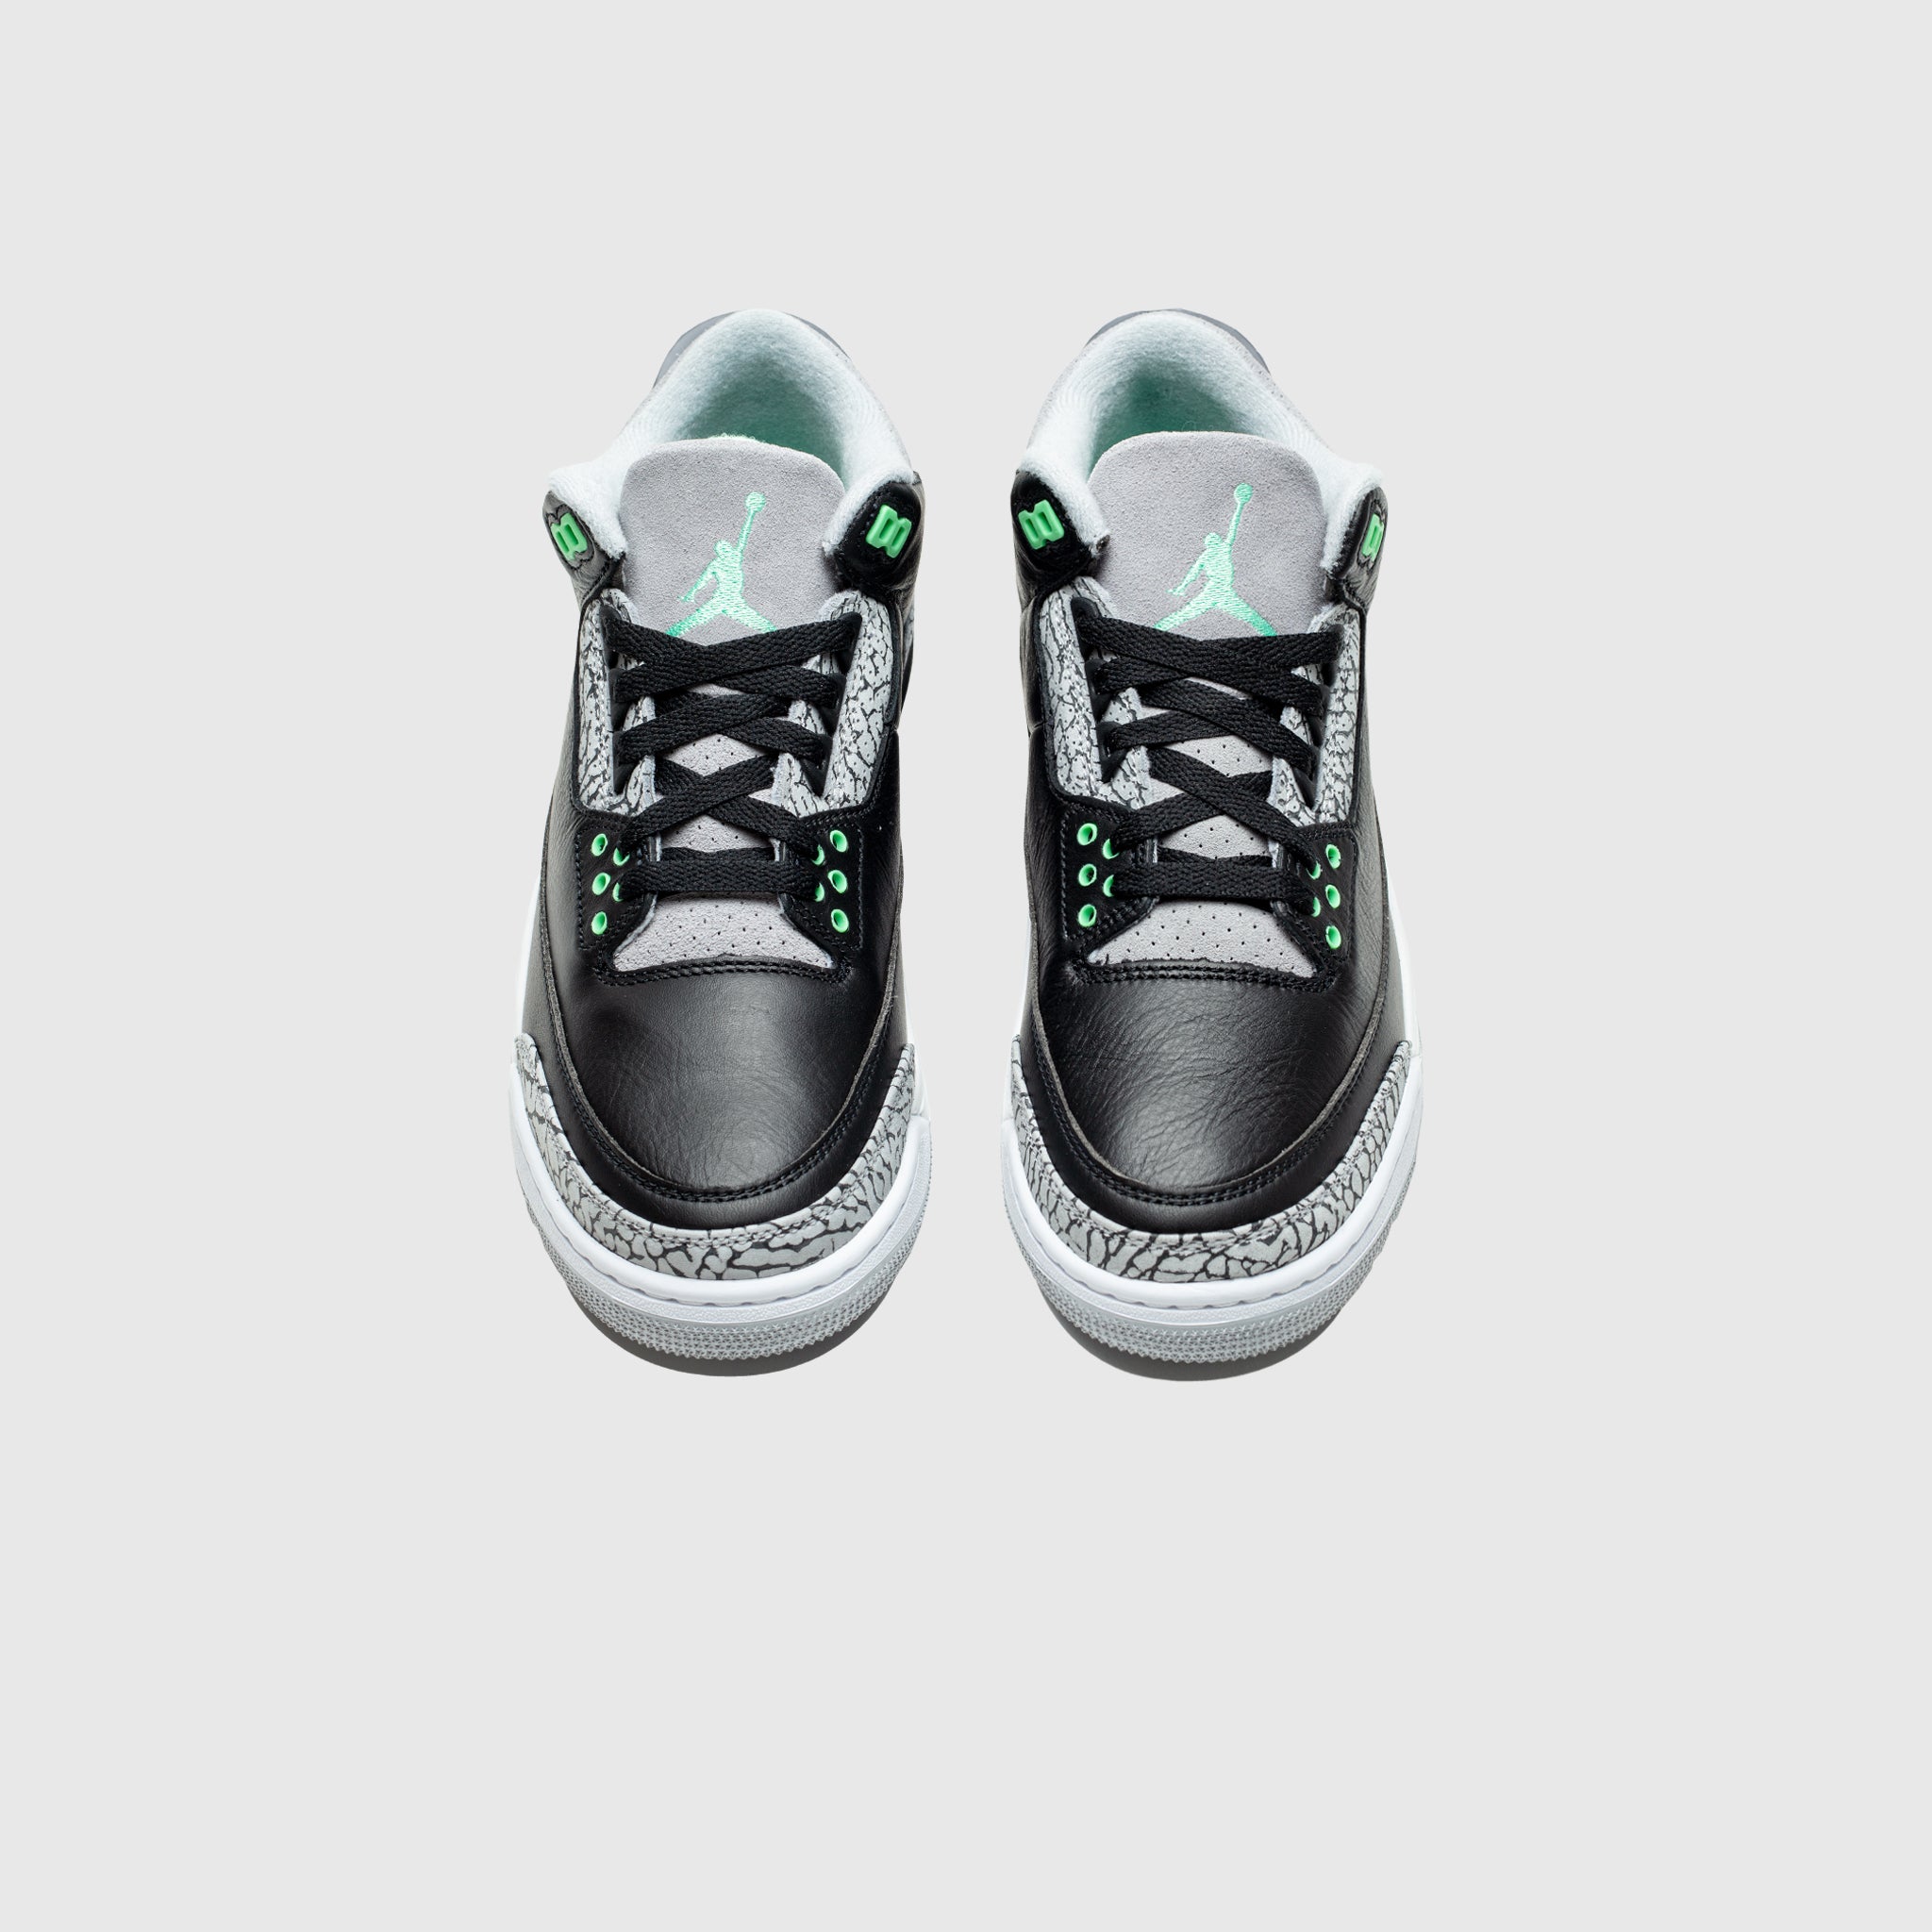 AIR Nike JORDAN 3 RETRO "BLACK/GREEN GLOW"